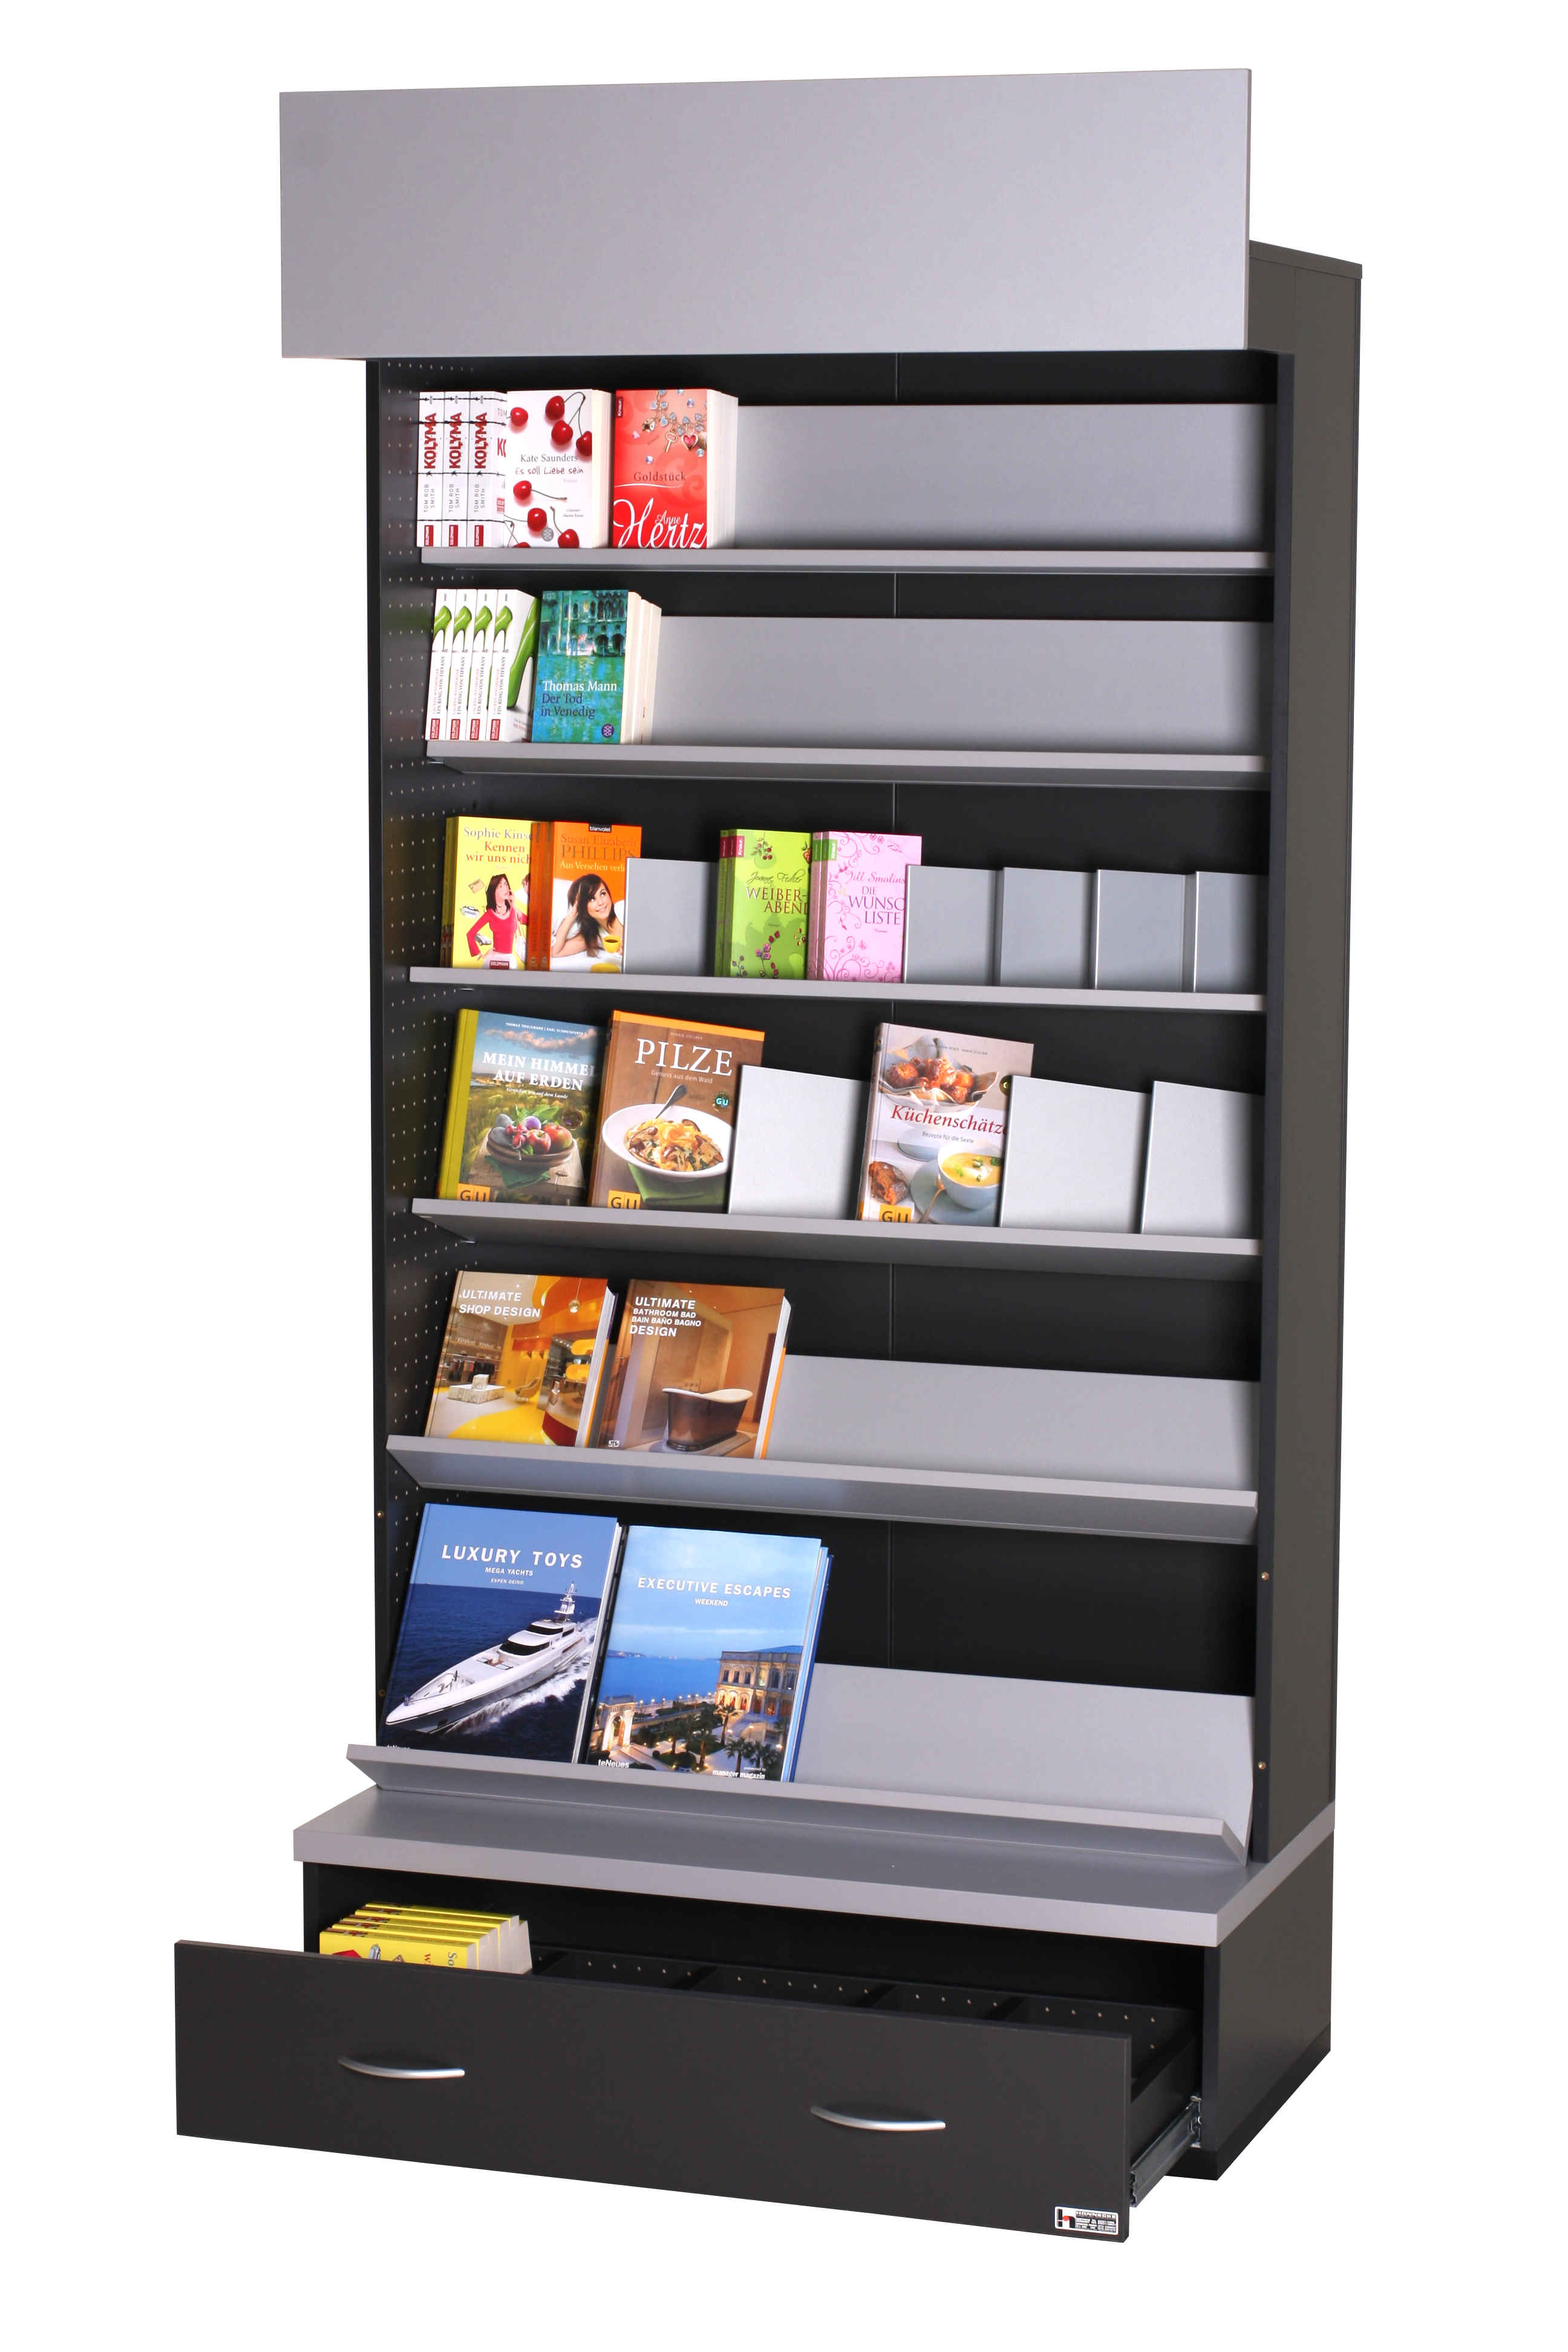 In.Line-System zur modernen Präsentation von Katalogen und Büchern in Läden